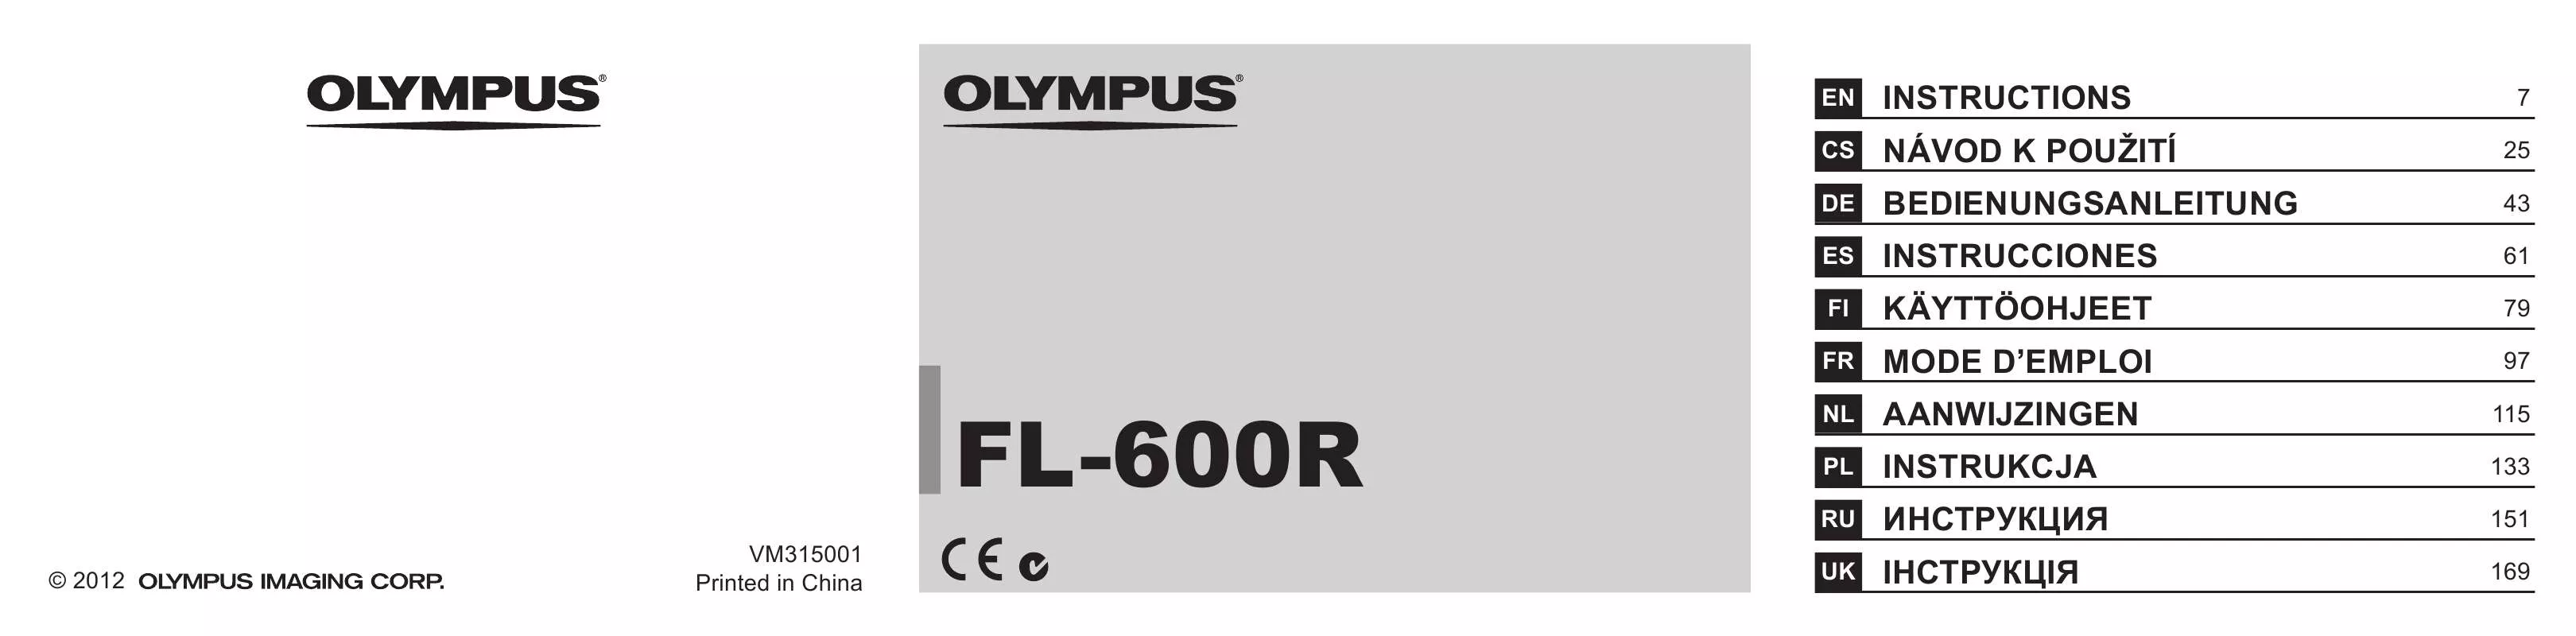 Mode d'emploi OLYMPUS FL-600R